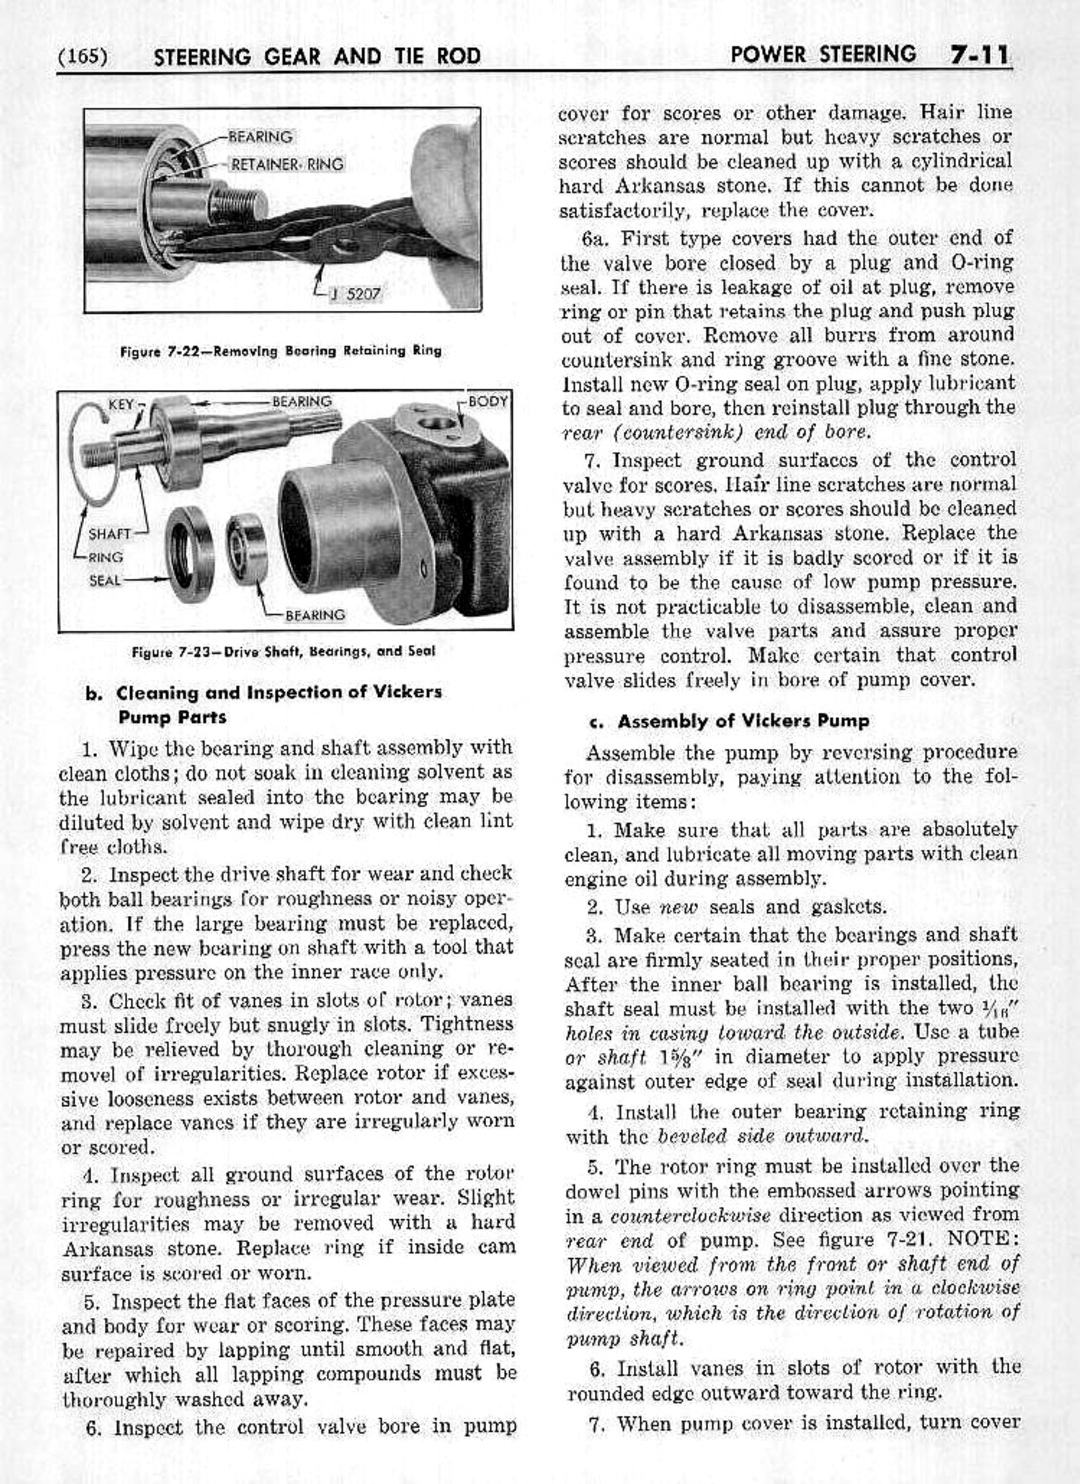 n_08 1953 Buick Shop Manual - Steering-011-011.jpg